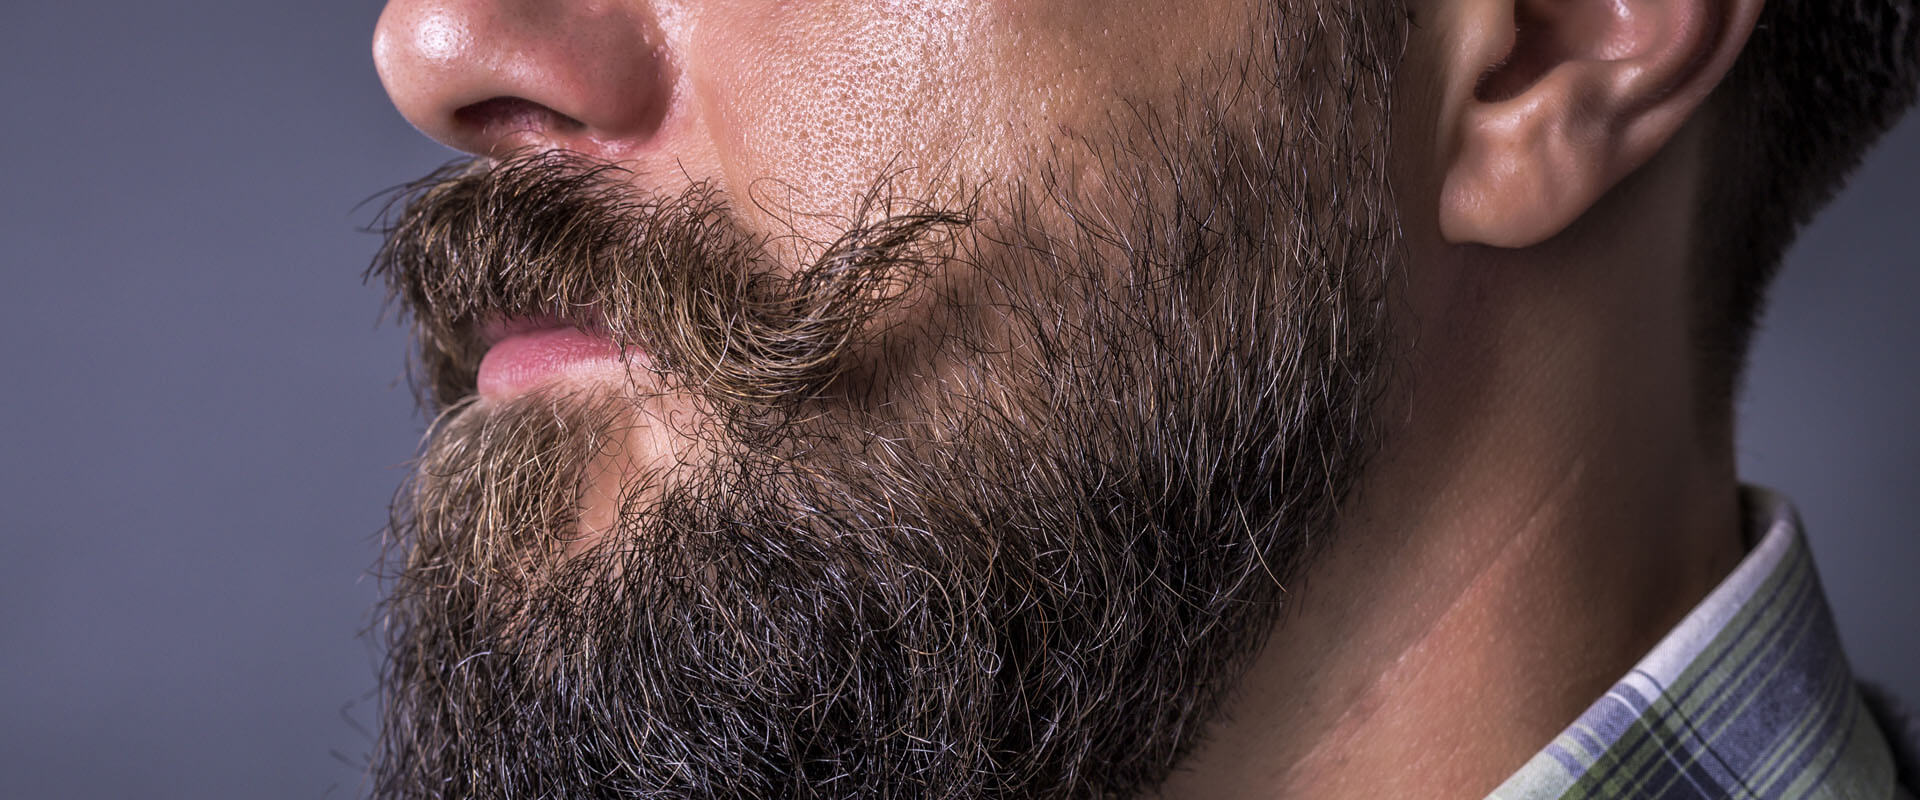 Barba y bigote estarán permitidos en la Nueva Normalidad